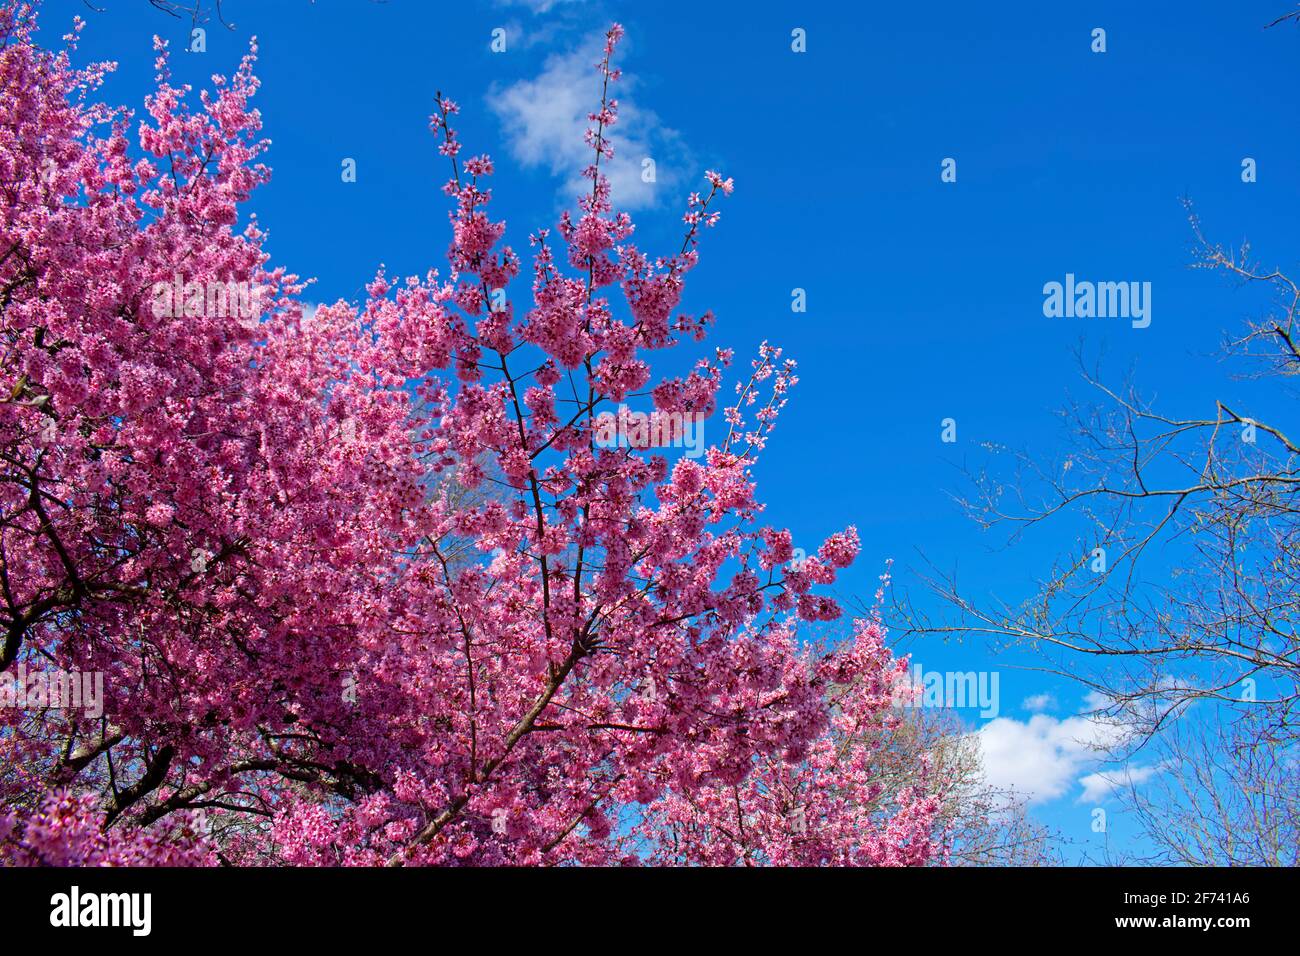 Cerisiers en fleurs en pleine floraison dans les jardins de Rutgers on une journée de printemps ensoleillée avec un ciel bleu -03 Banque D'Images